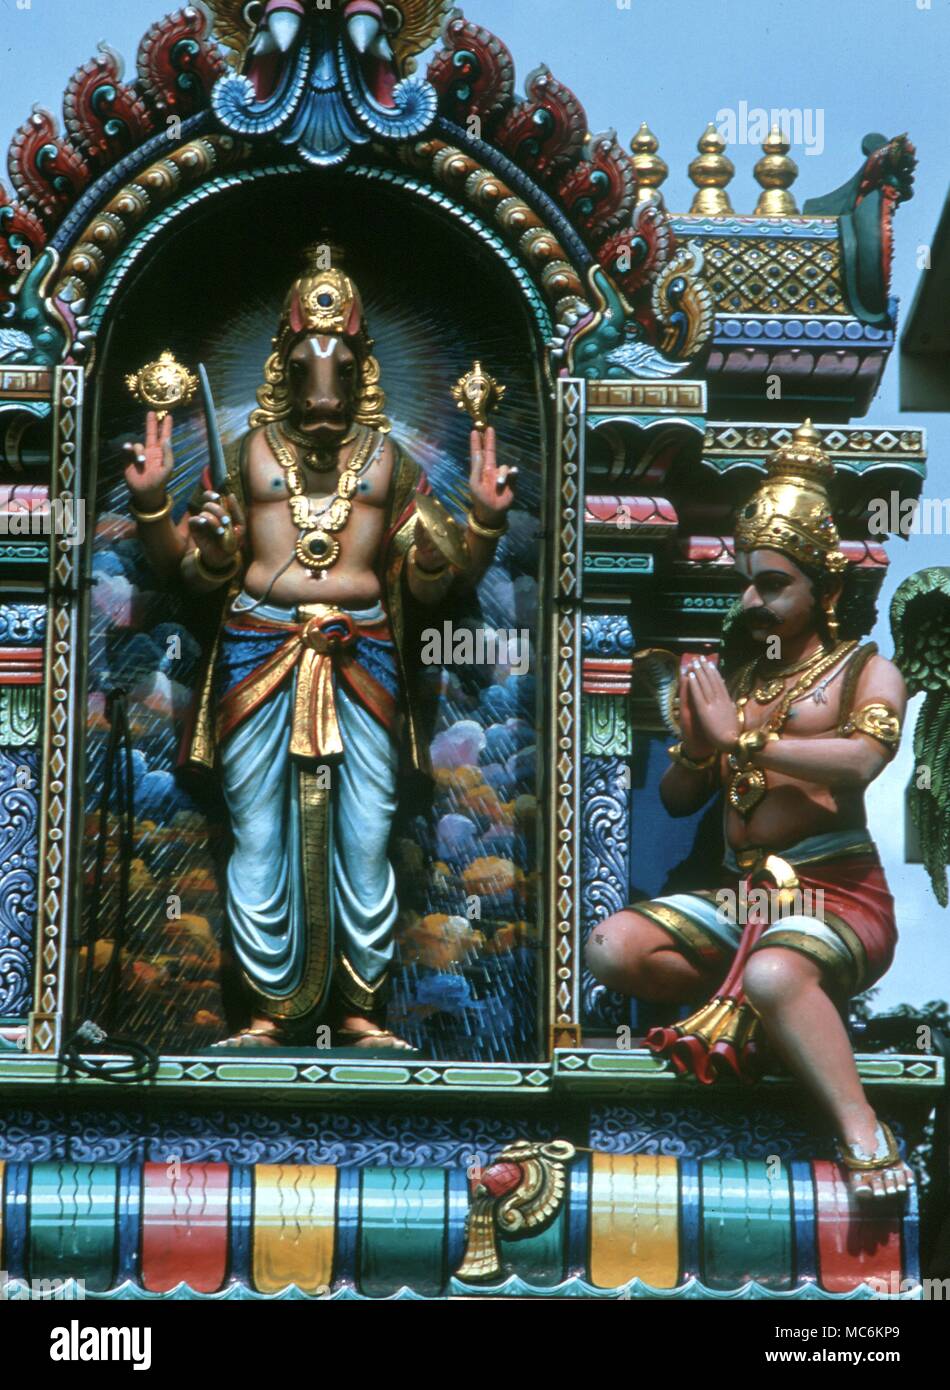 Mitologia indù. Narasimha, l'uomo-leone, uno degli avatar di Krishna. Tempio indù di Singapore Foto Stock